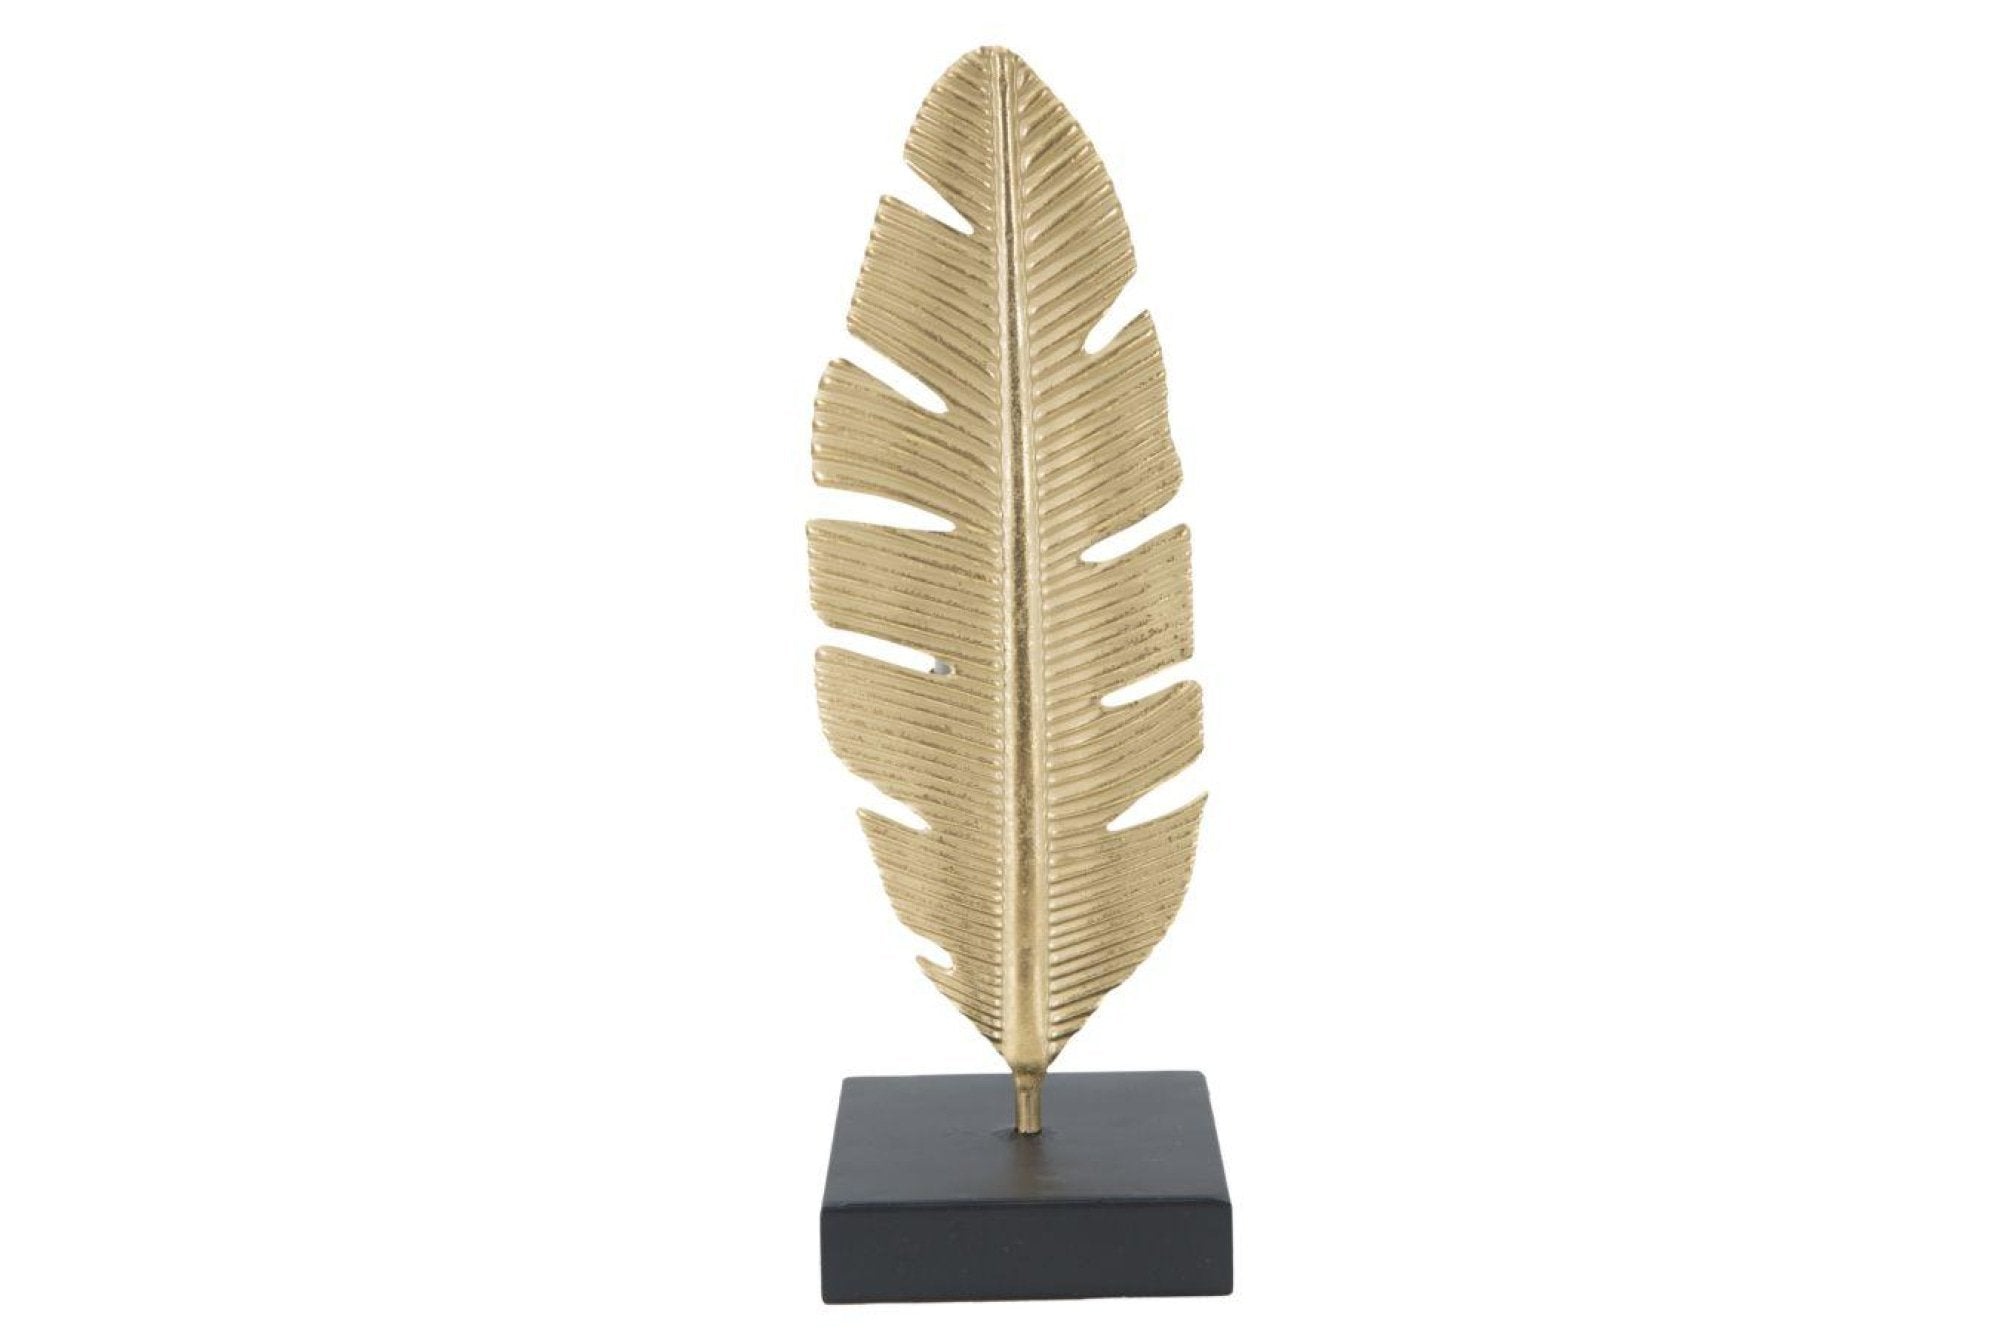 Feather aranyszínű dekorációs gyertyatartó, magasság 30 cm - Mauro Ferretti